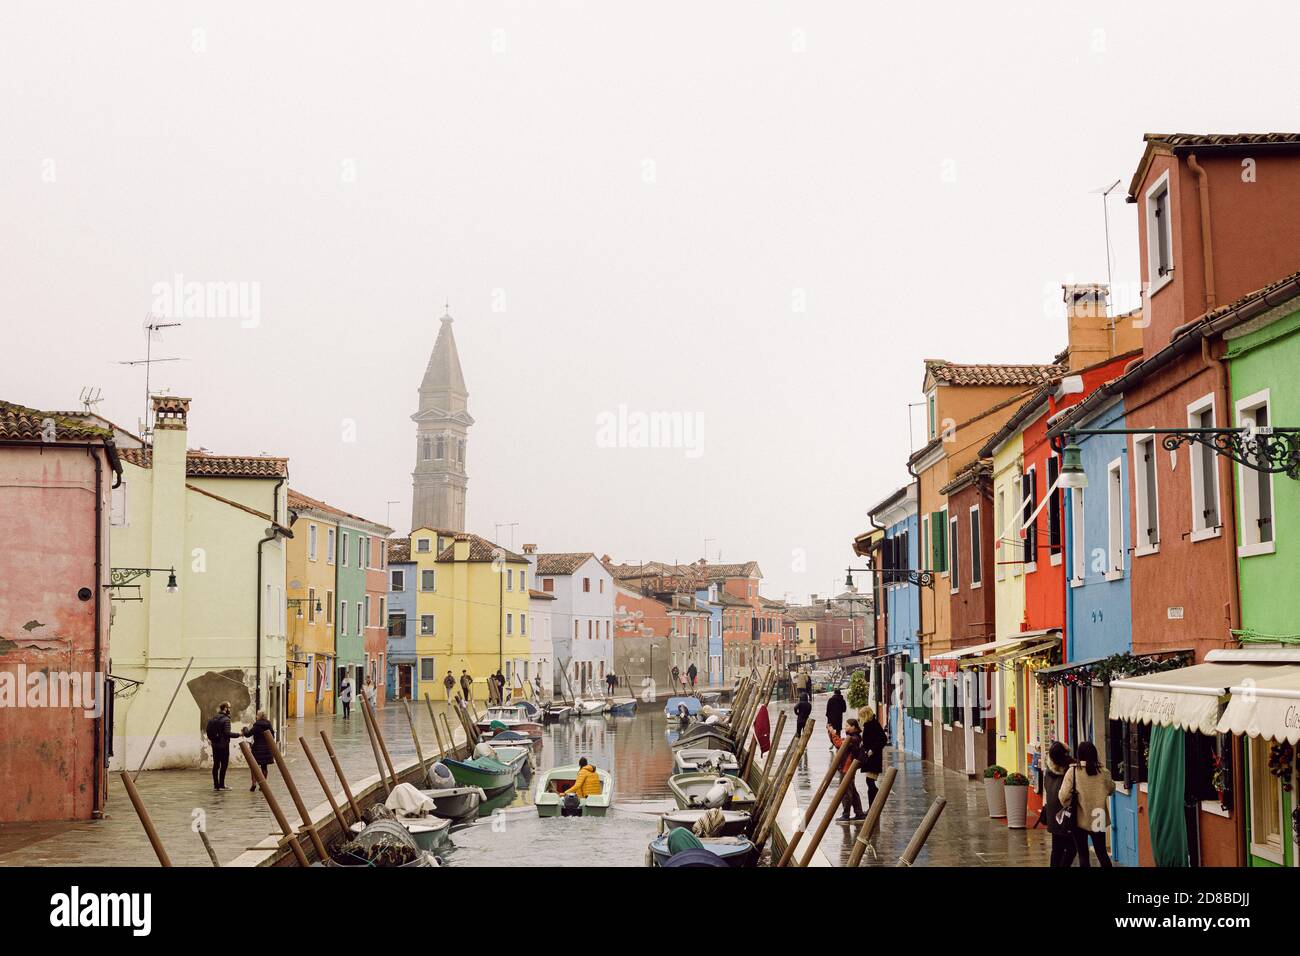 Maisons et canaux de Burano et Bell Tower de San Martino, Burano, avec des mouettes dans une journée d'hiver brumeux. Personne avec un imperméable jaune sur un petit bateau Banque D'Images